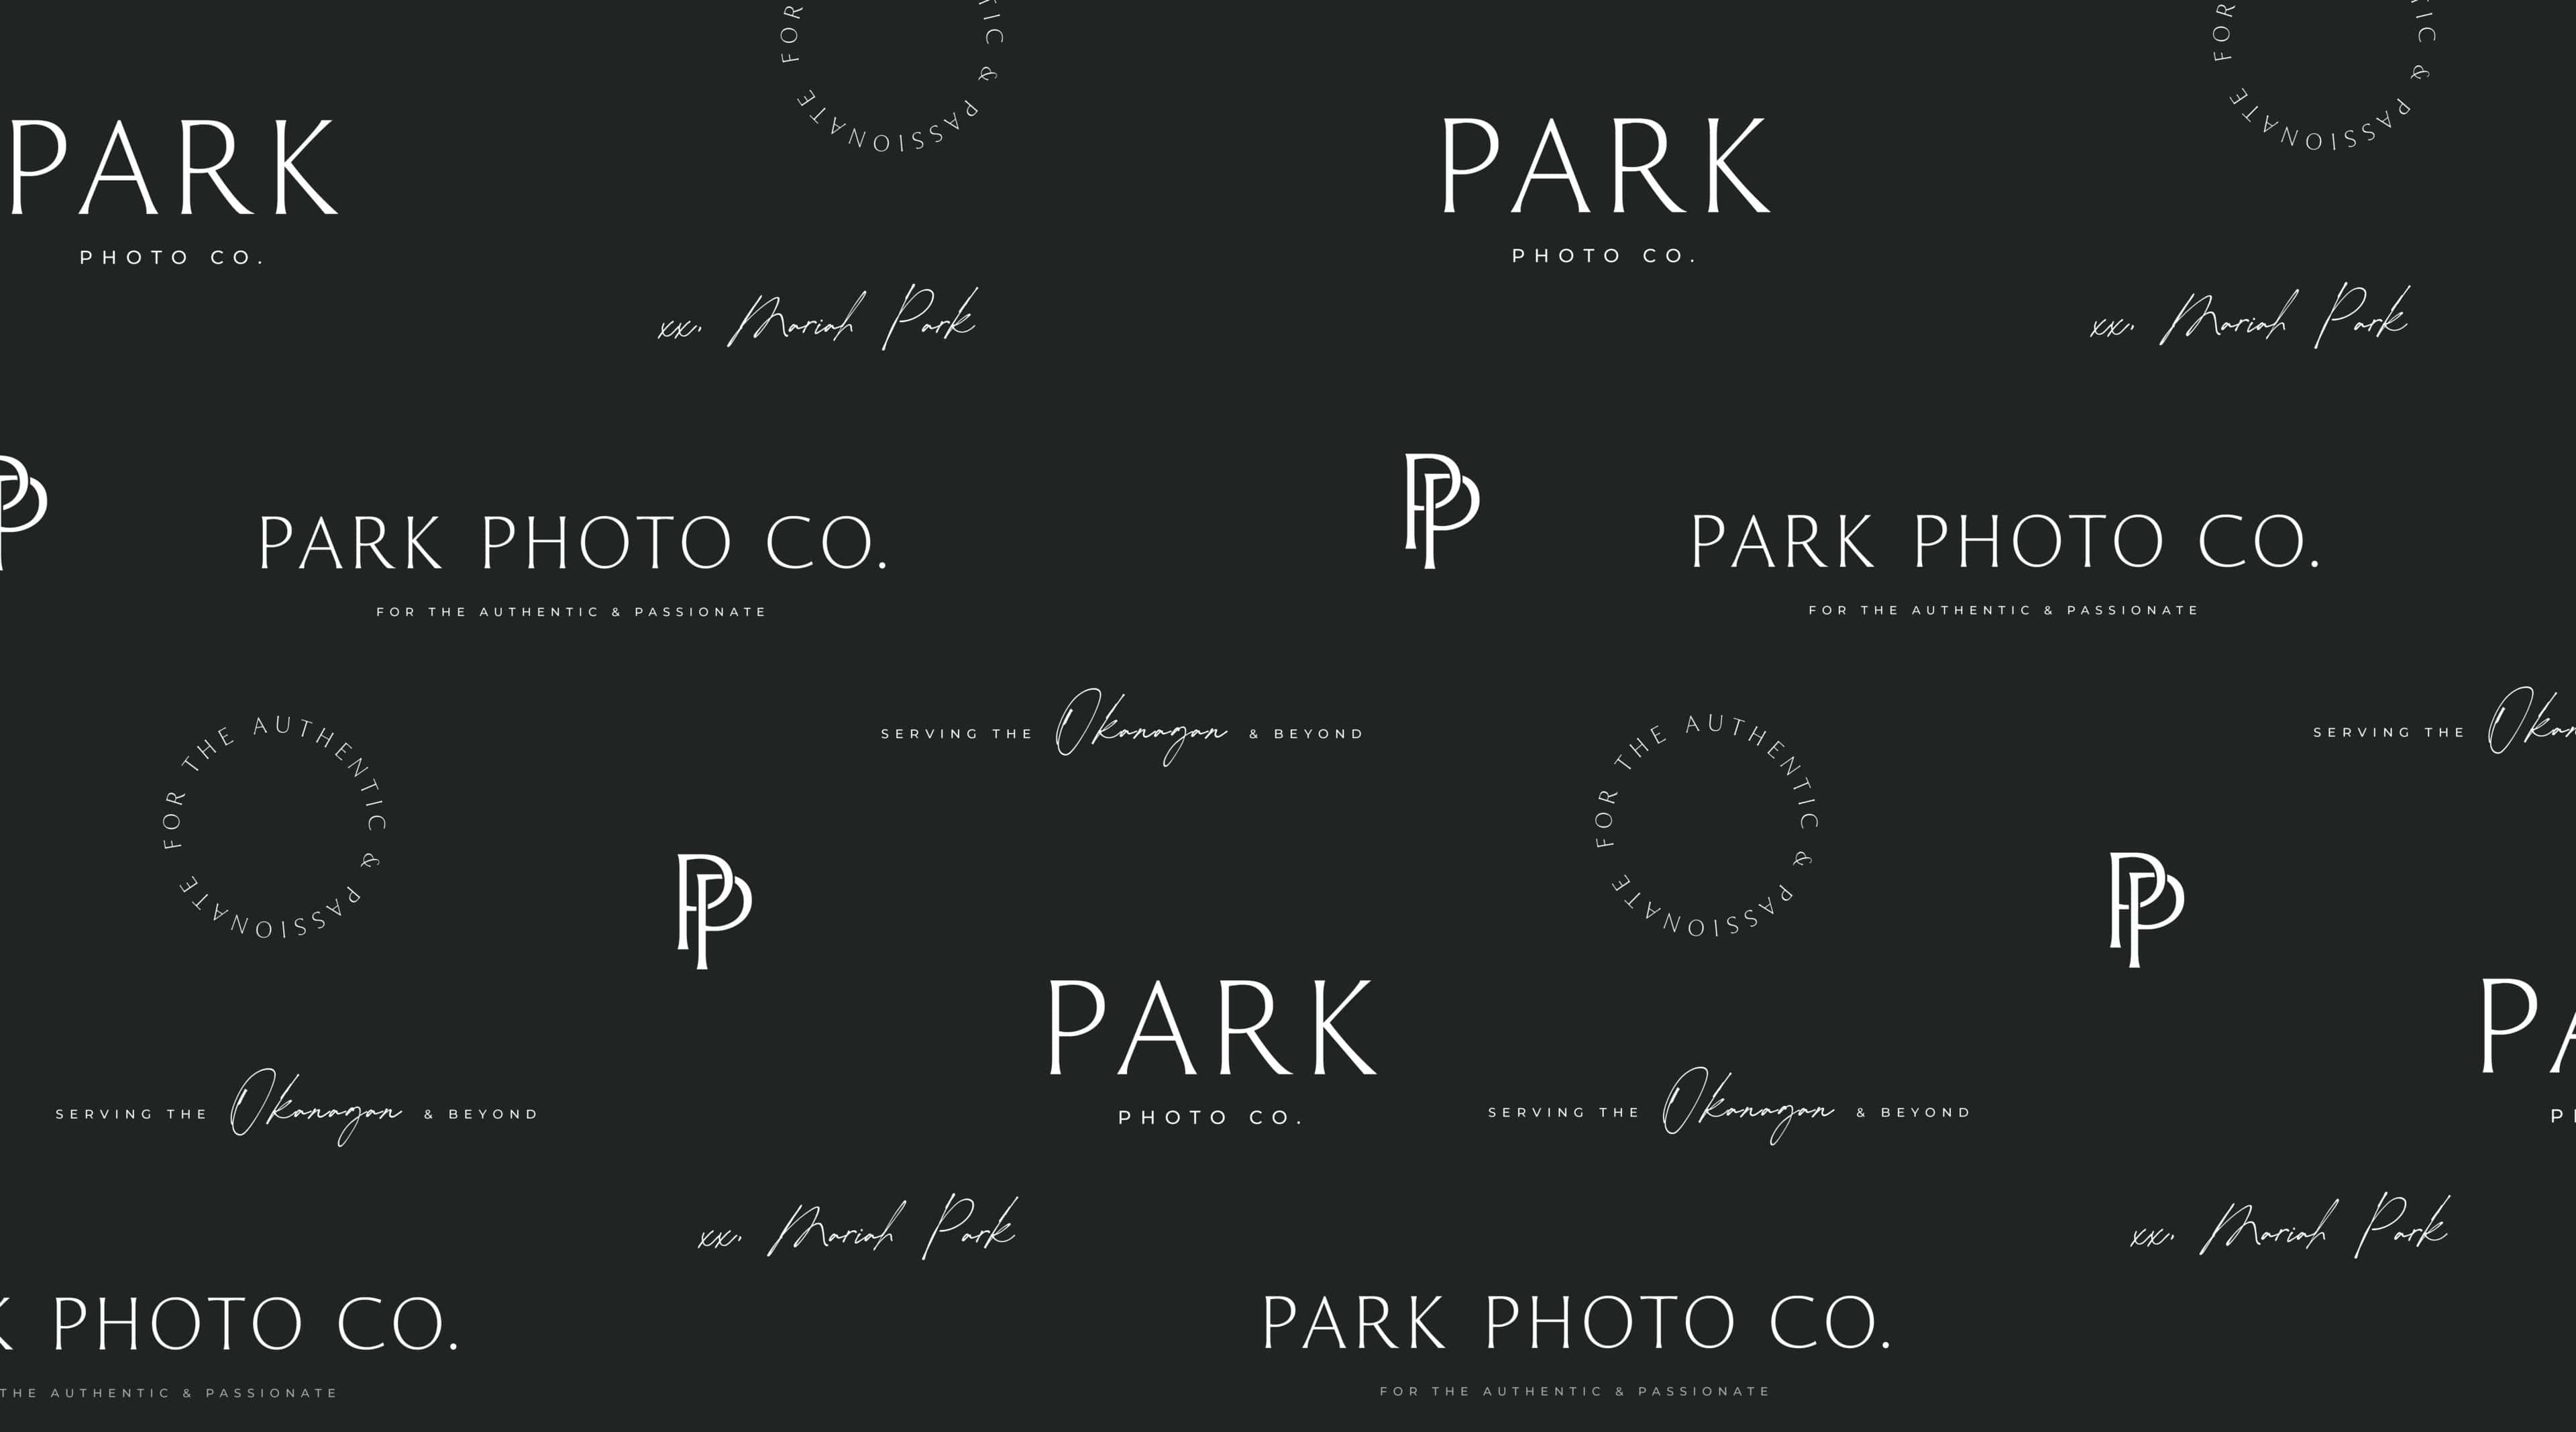 Park Photo Co brand pattern background